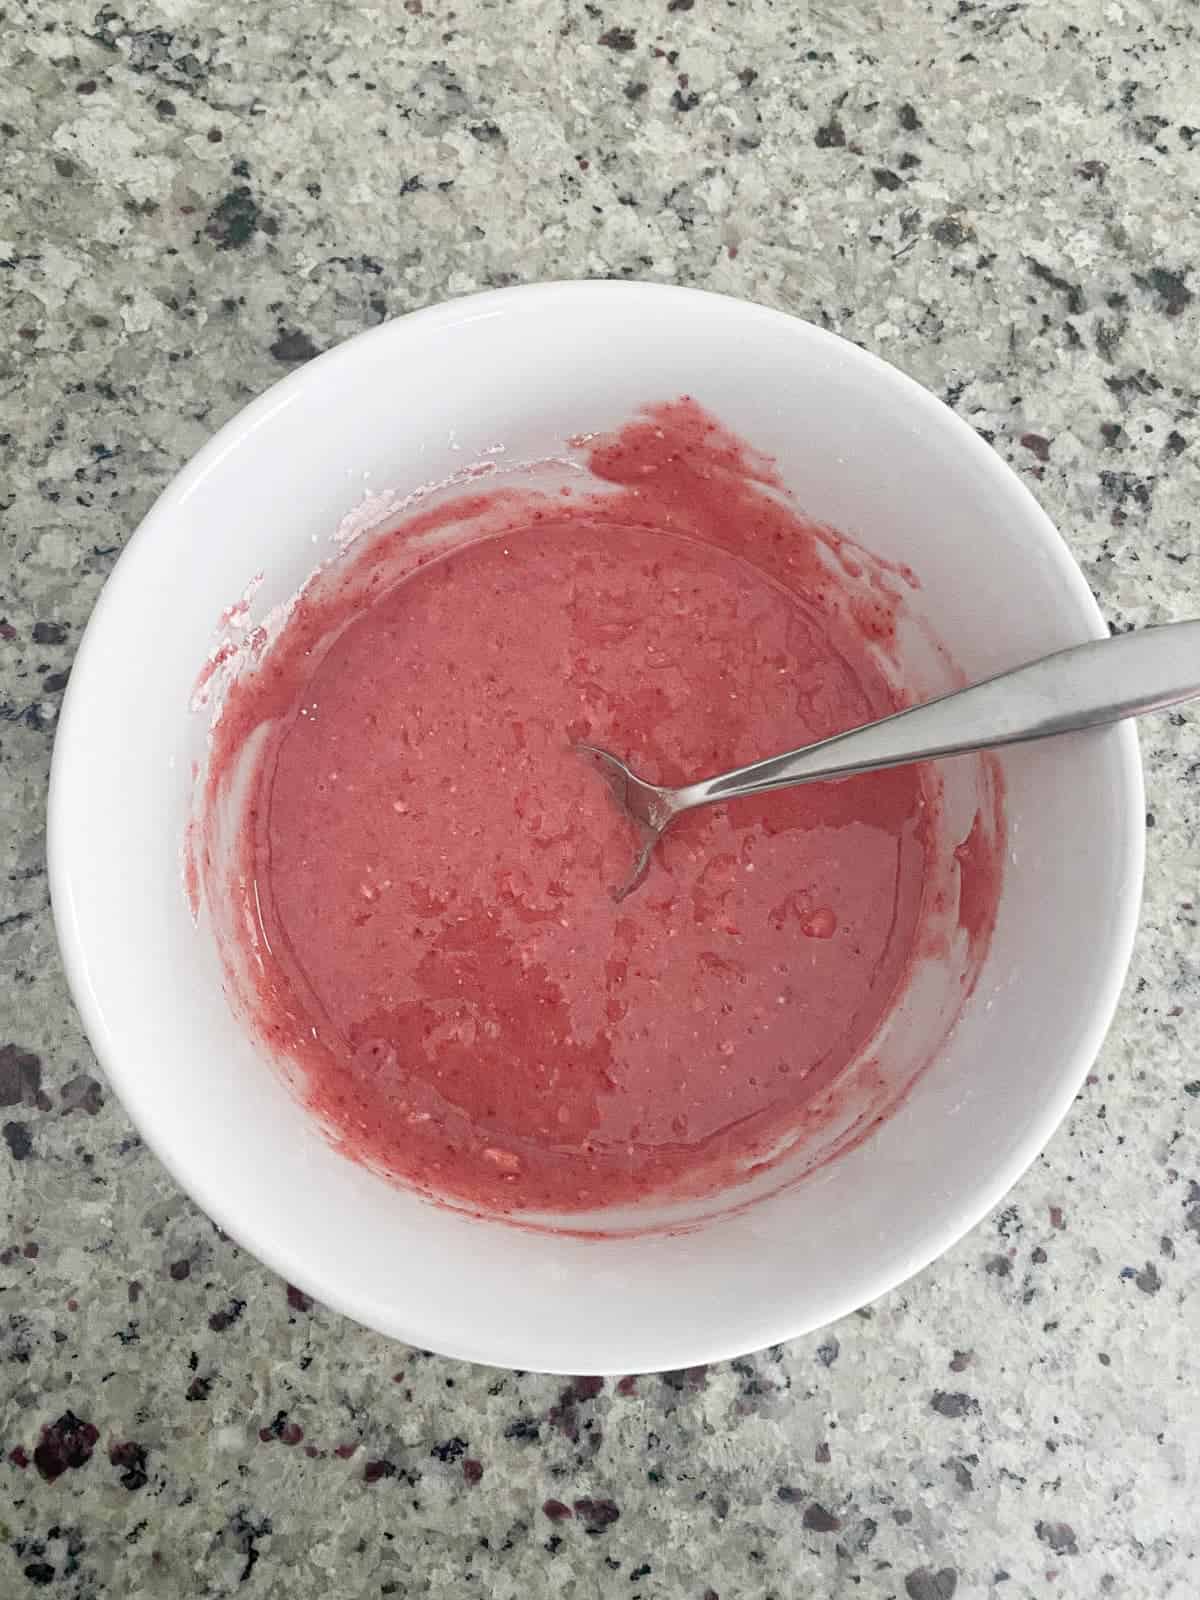 Making strawberry glaze, step 2.